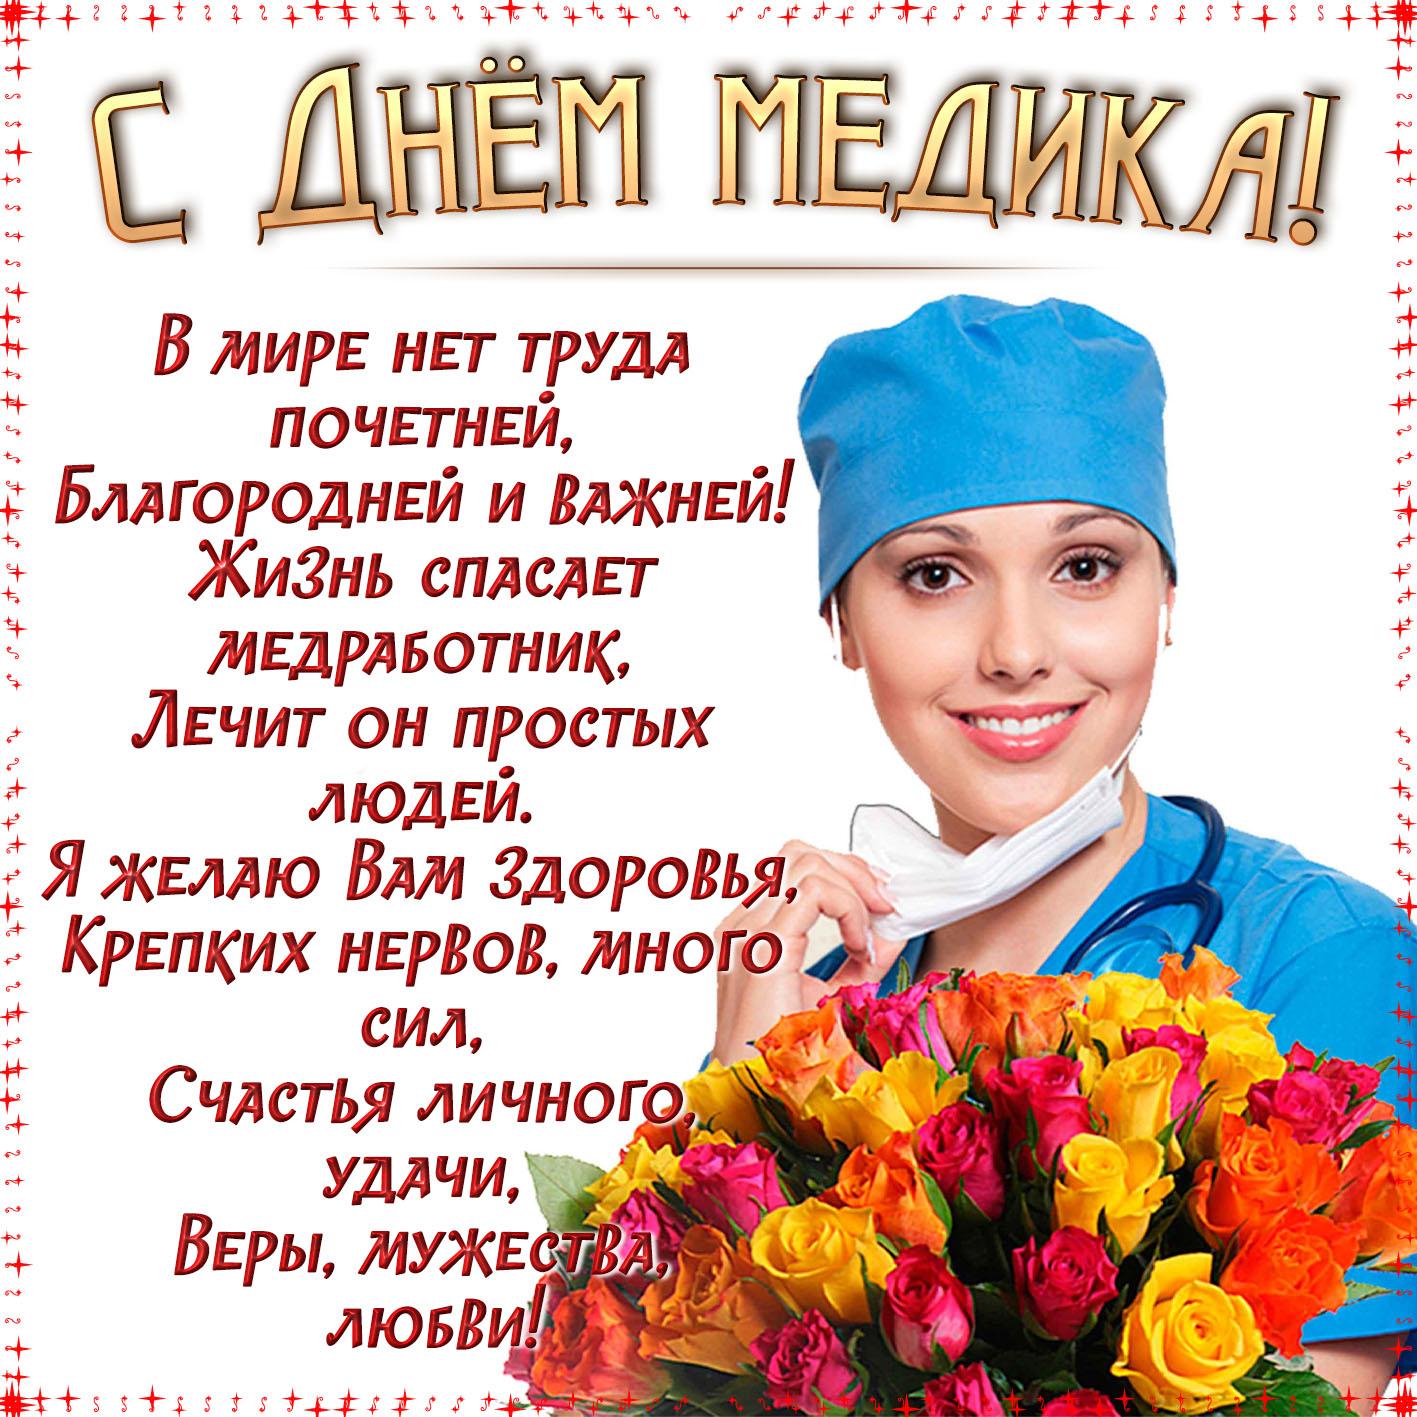 День медика 2021 в Украине - яркие открытки и поздравления в стихах и прозе, фото - Стайлер